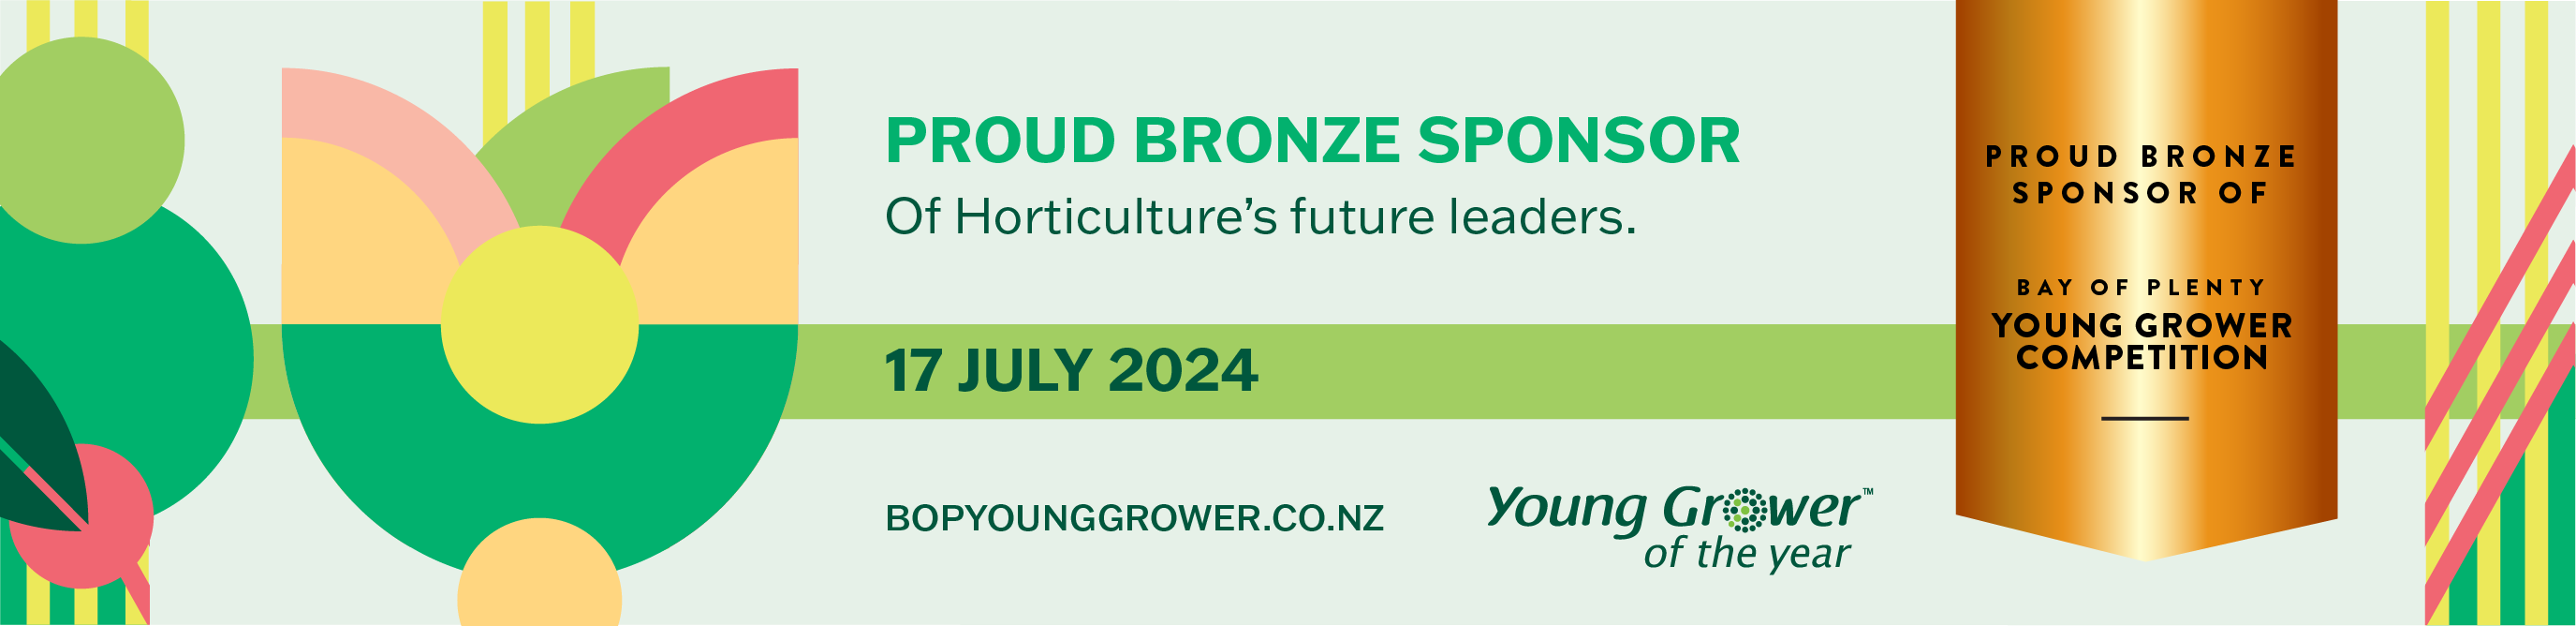 J003357 - NZKGI BOPYG 2024 Email Signatures_Final_Bronze Sponsor